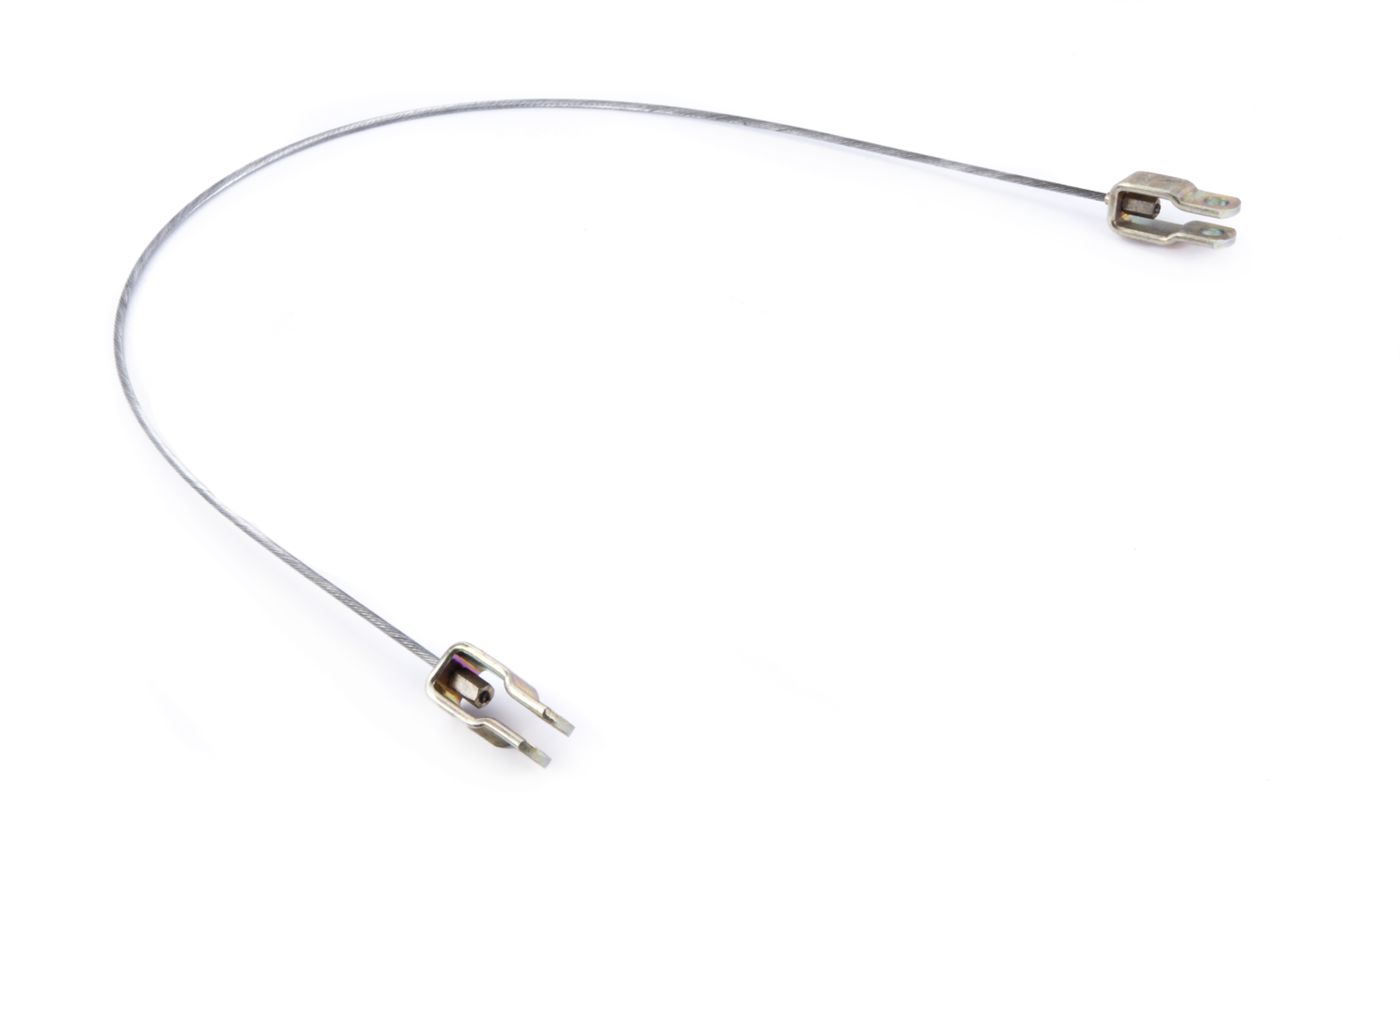 Handbremsseil
Handbrake cable
Câble de frein à main
Cable del 